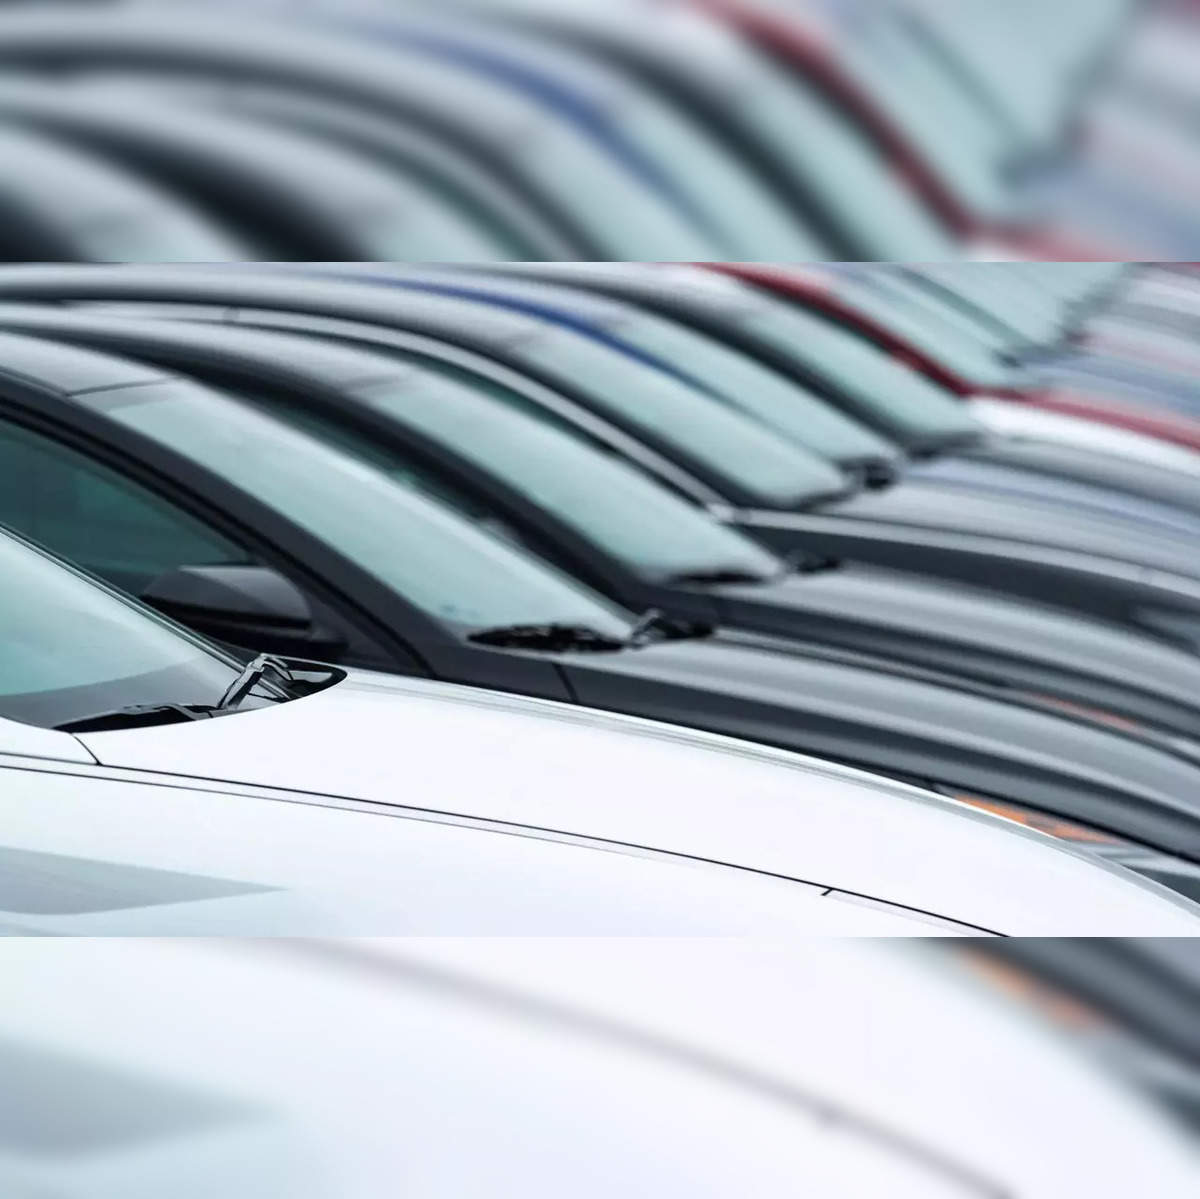 car sales: Car inventory at dealerships may hit 4-year high - The